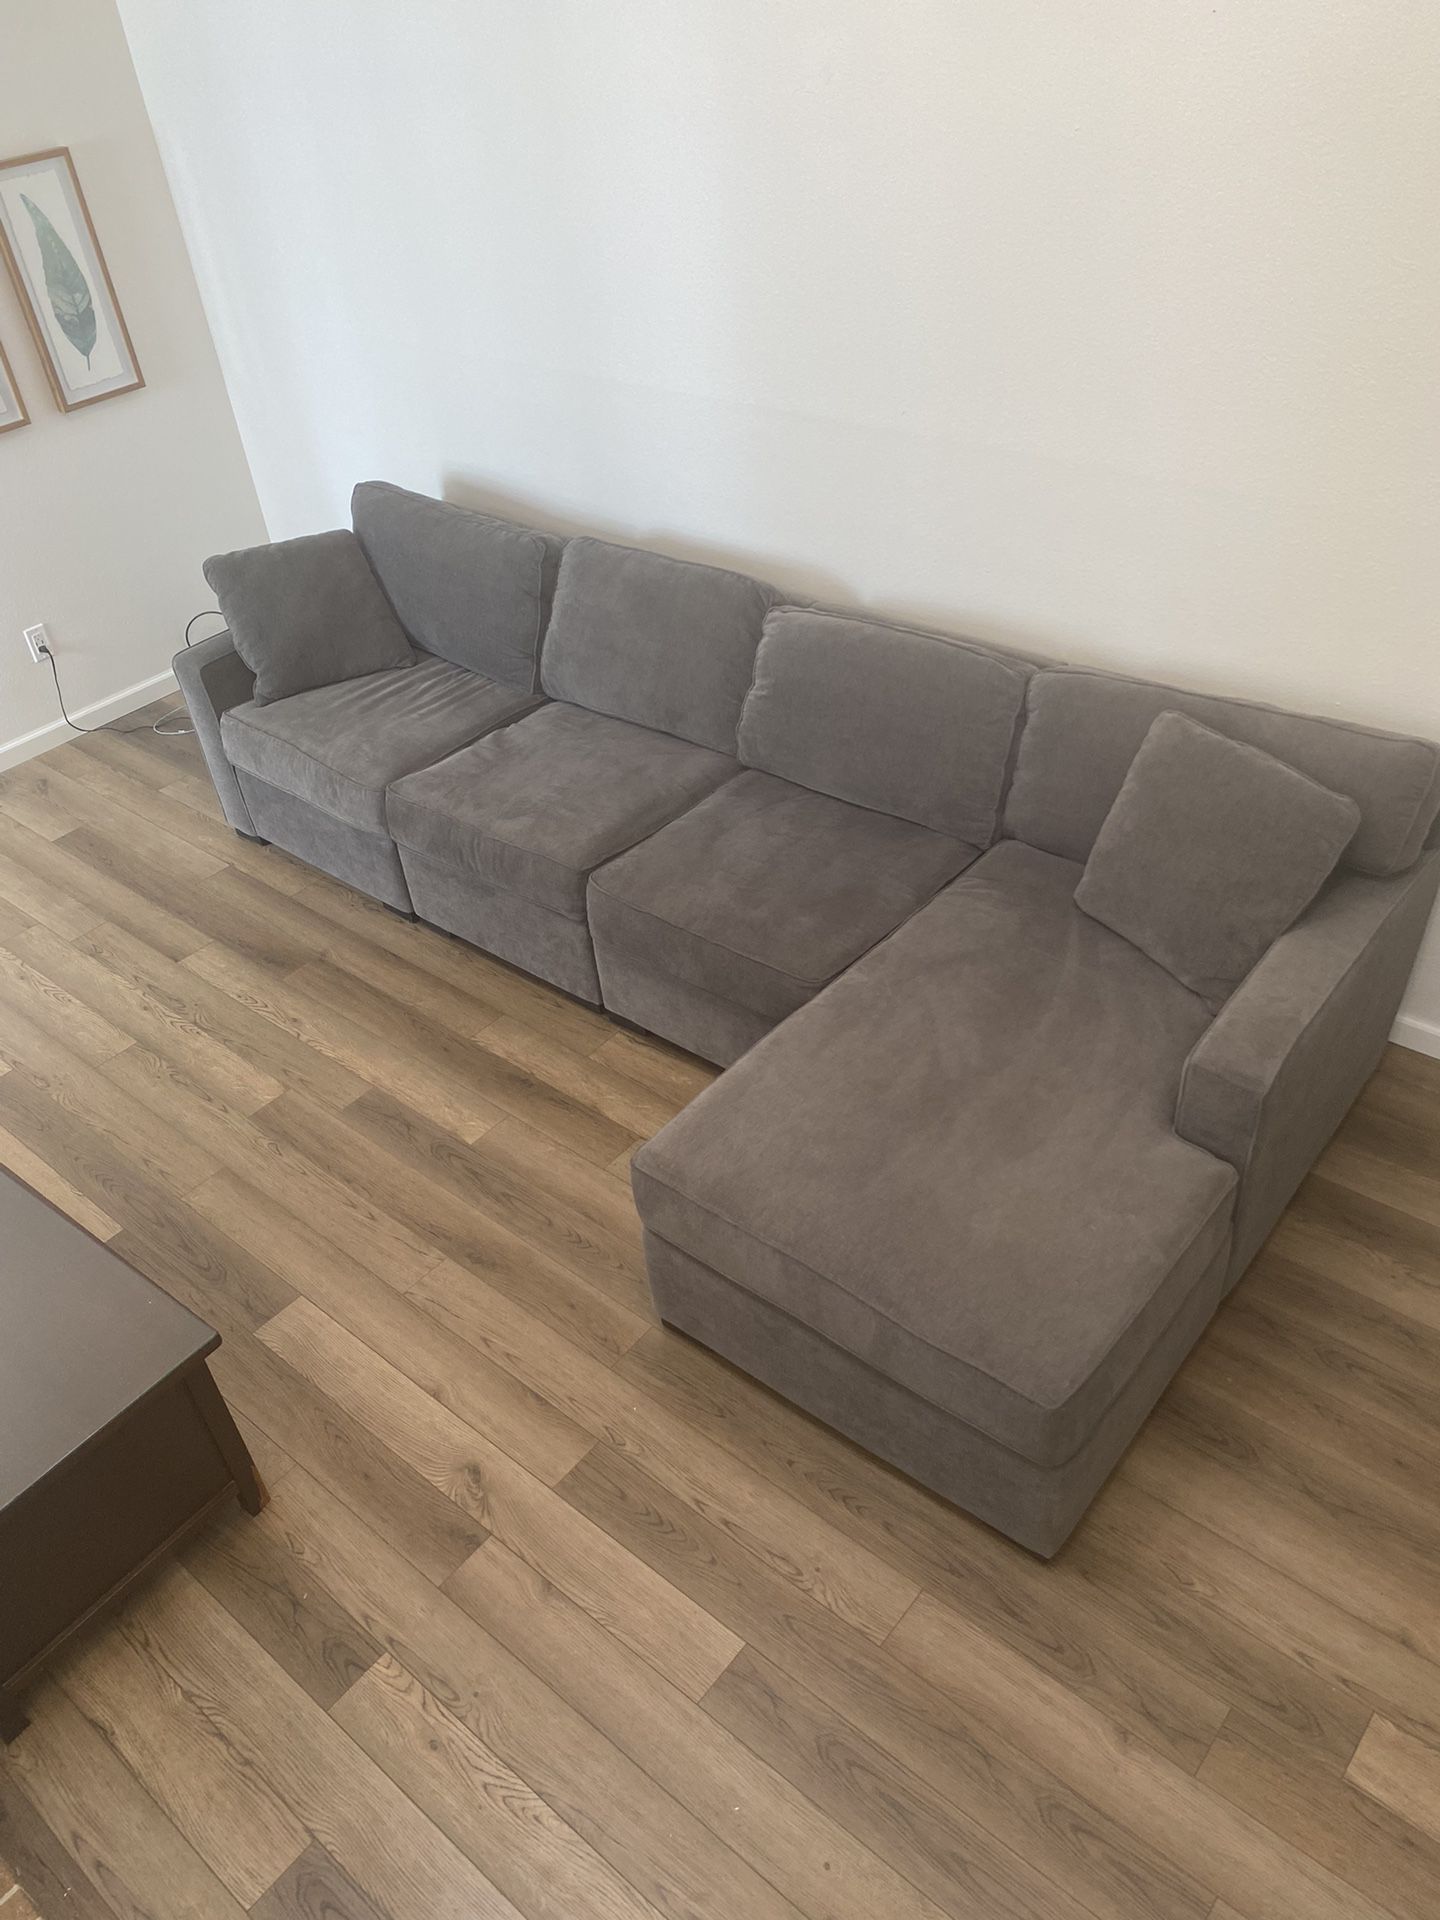 Macy’s Radley Sectional L-shaped Sofa